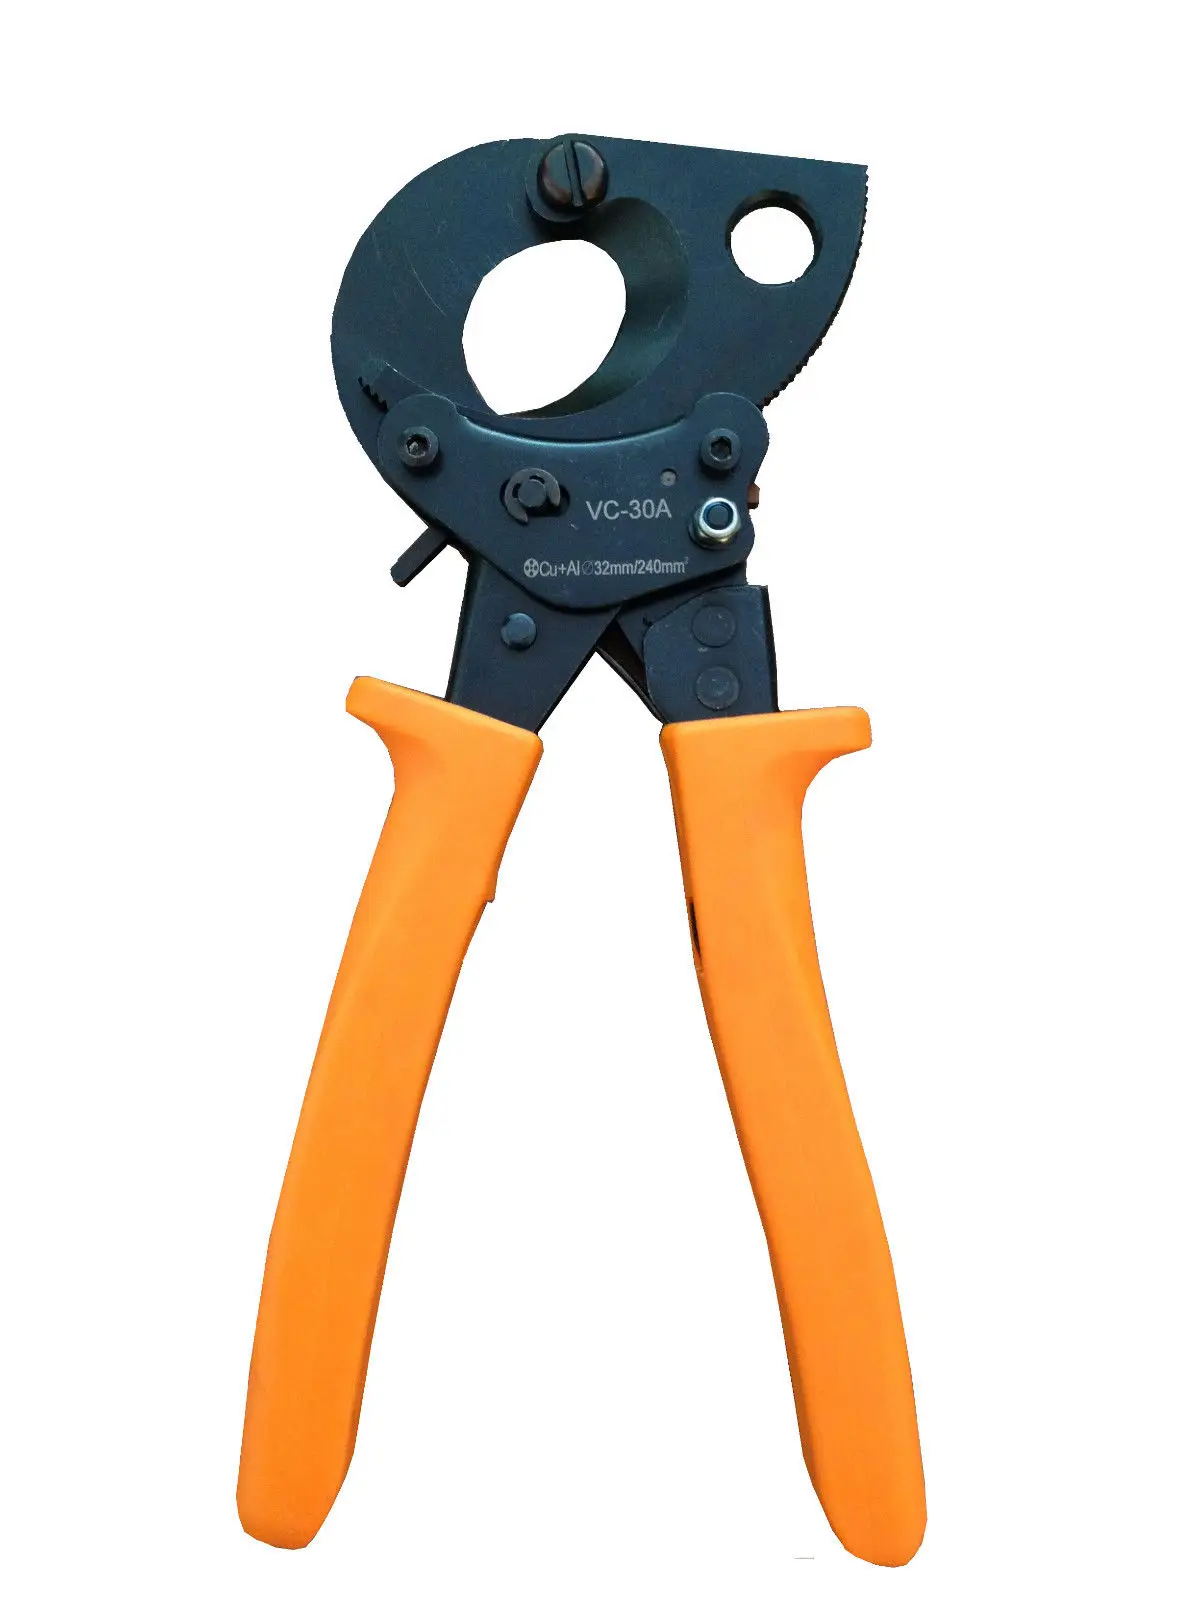 Vc tool. Ножницы для резки кабеля с храповым механизмом.